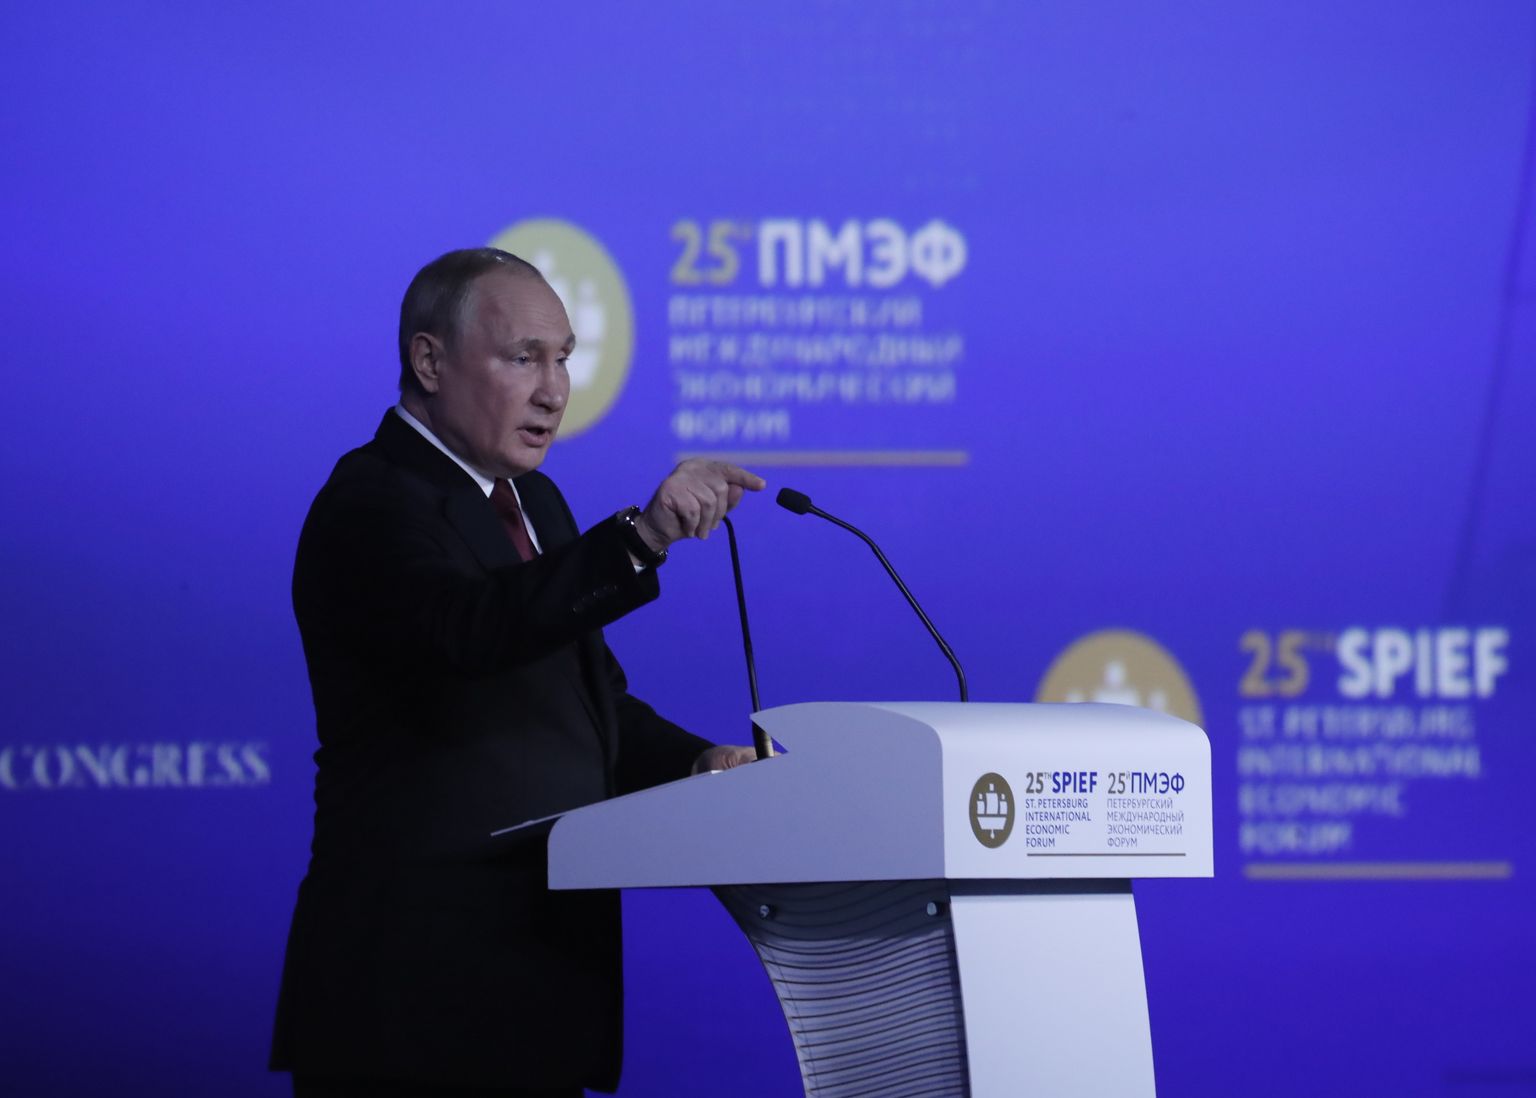 Venemaa president Vladimir Putin rääkimas Peterburi rahvusvahelise majandusfoorumi (SPIEF) täiskogu istungil Peterburis.